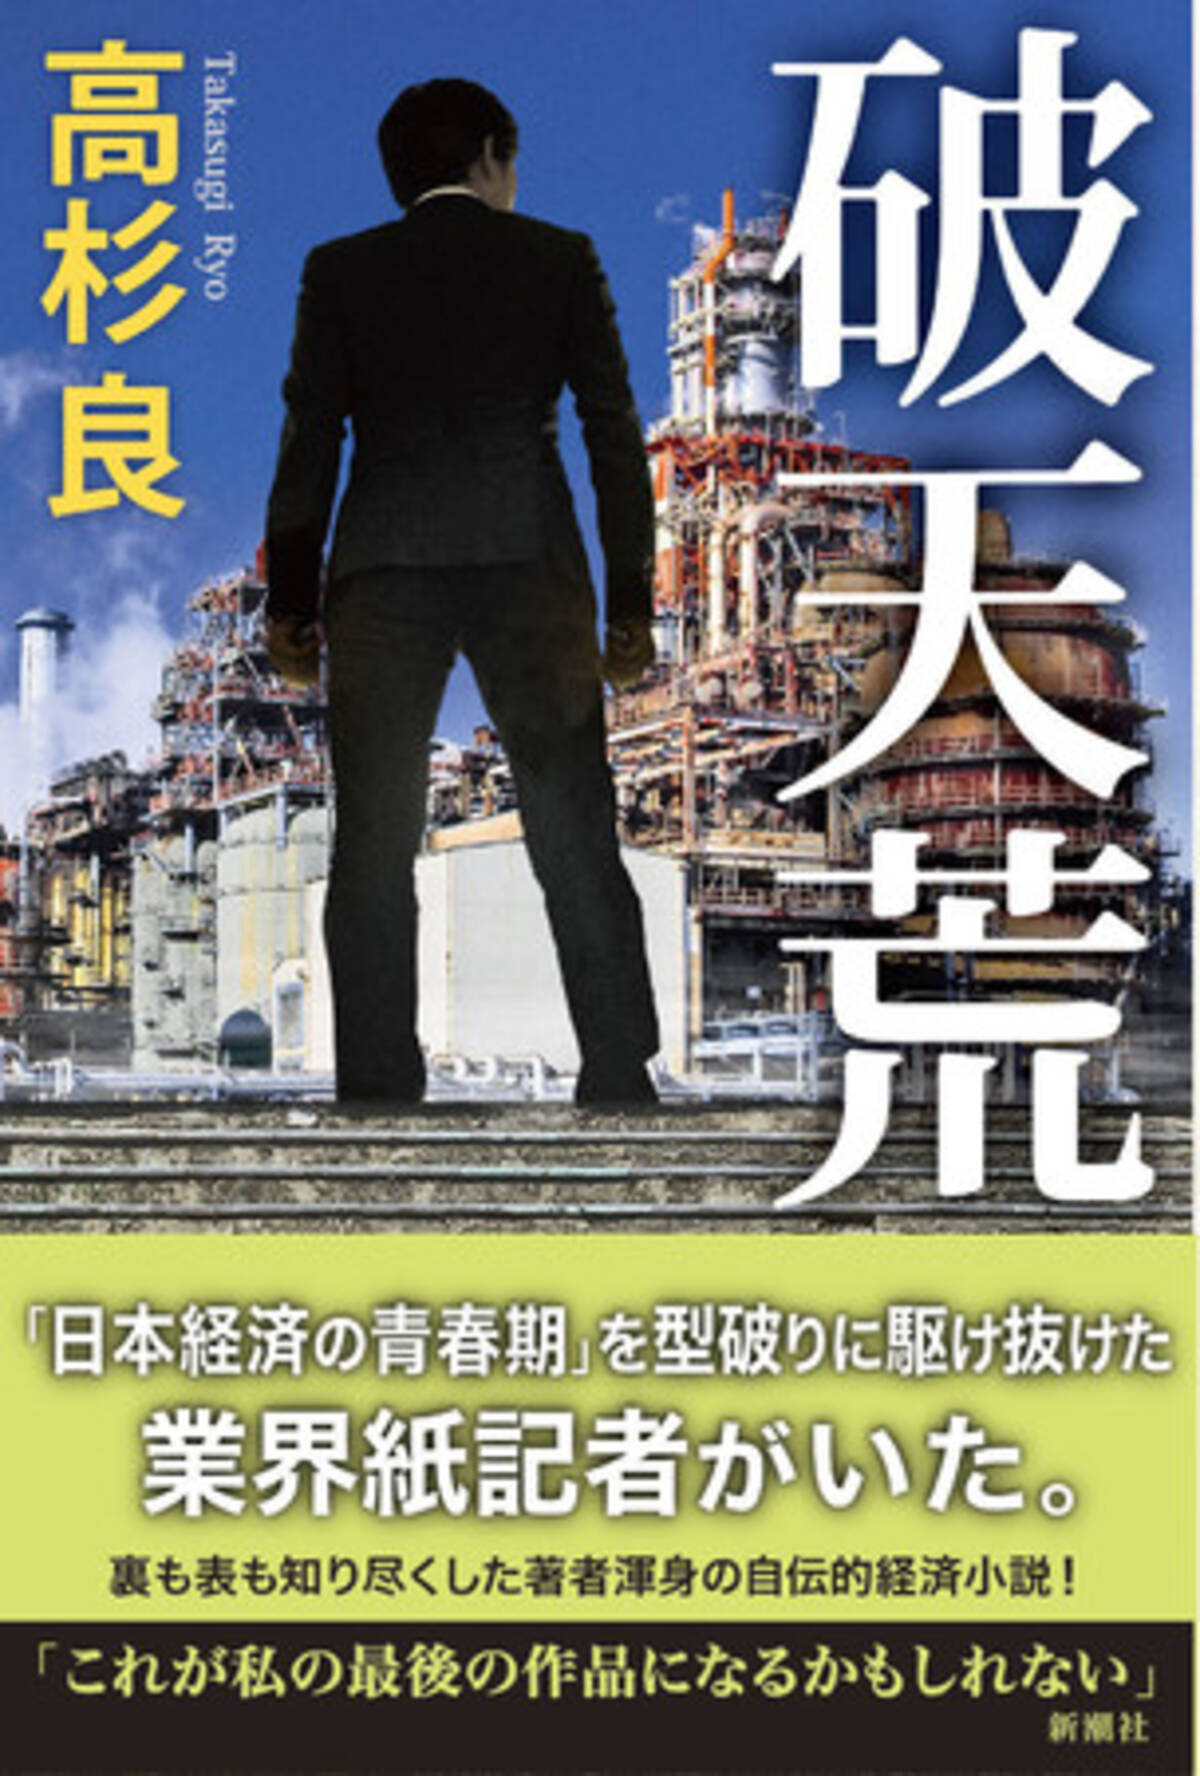 日本経済の青春期 を型破りに駆け抜けた業界紙記者がいた 裏も表も知り尽くした著者渾身の自伝的経済小説 高杉良 破天荒 本日発売 21年4月21日 エキサイトニュース